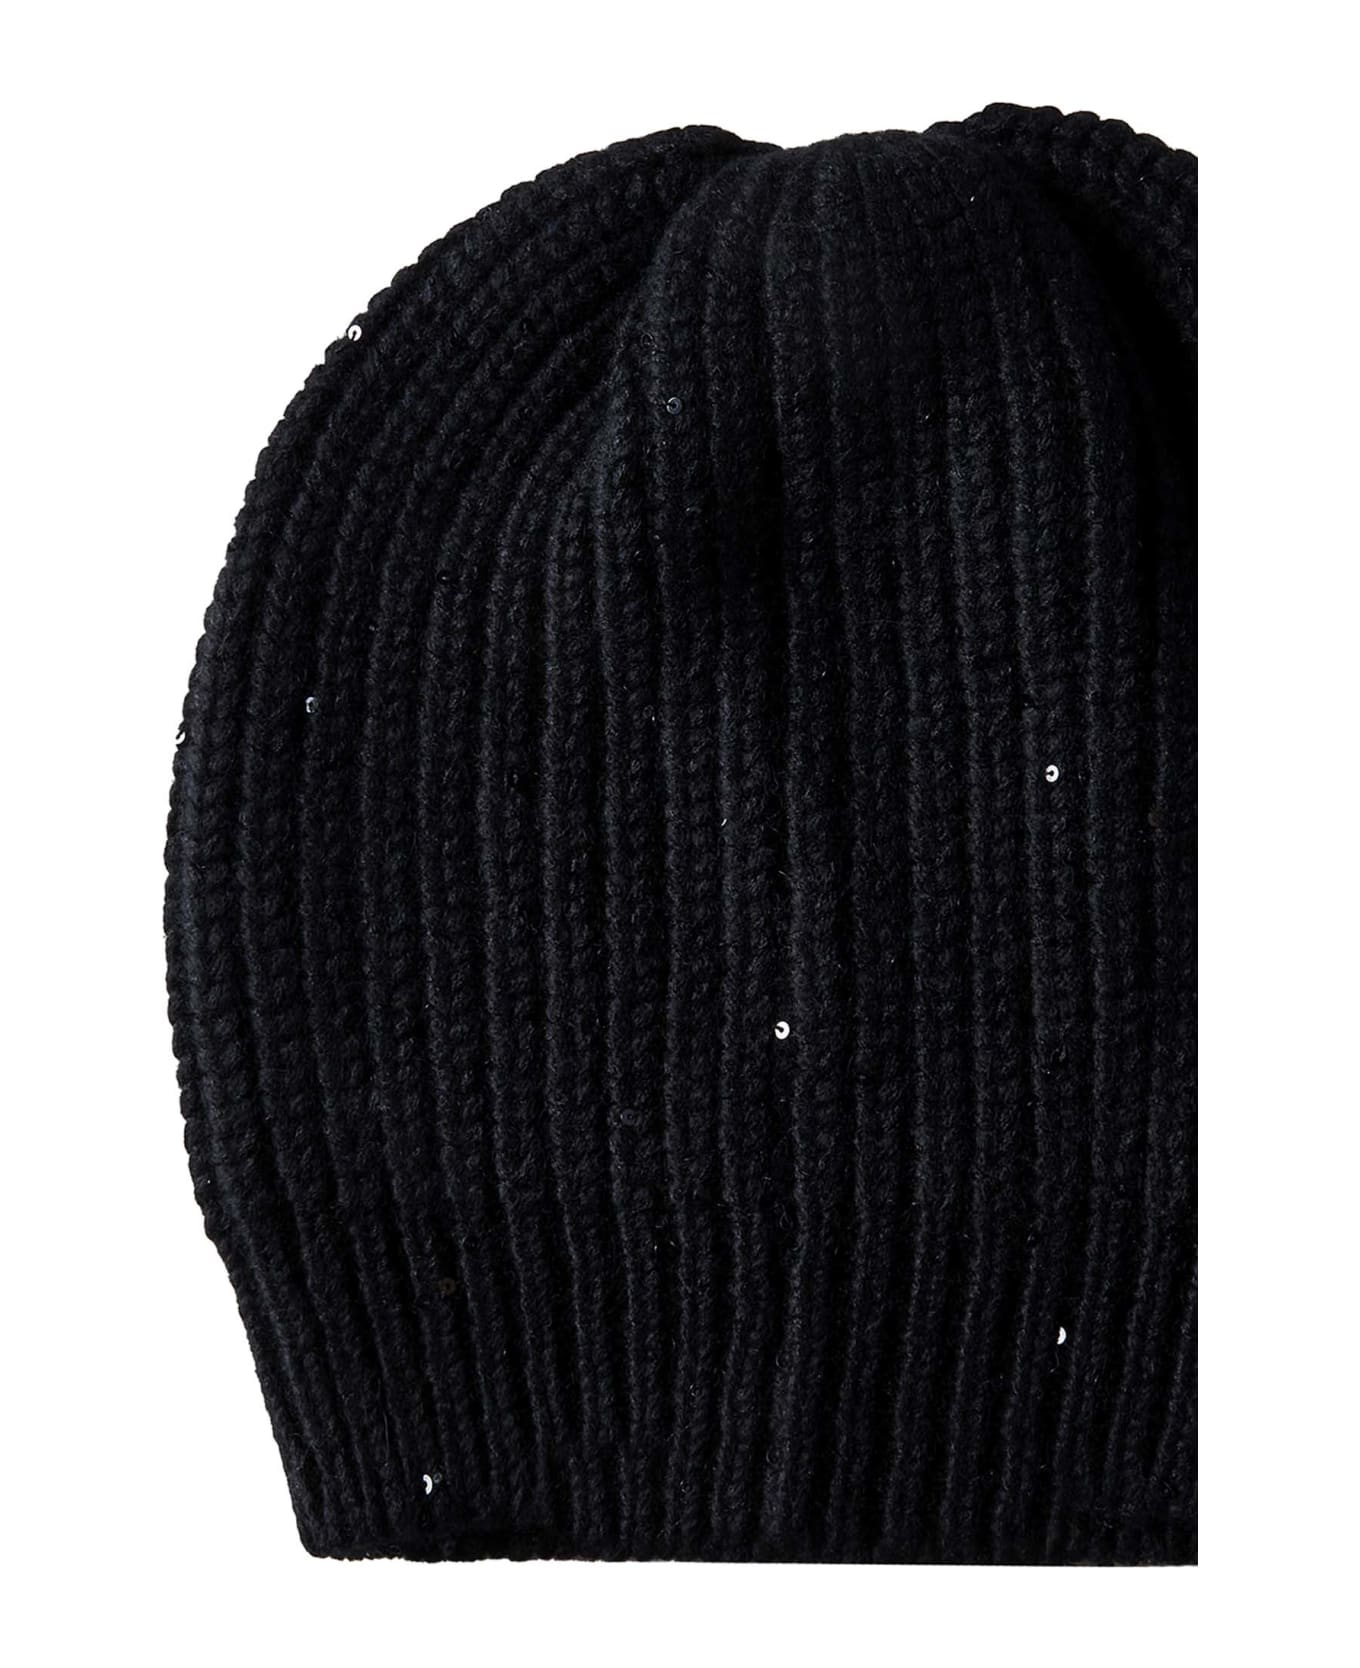 Brunello Cucinelli Ribbed Knit Beanie - Nero 帽子